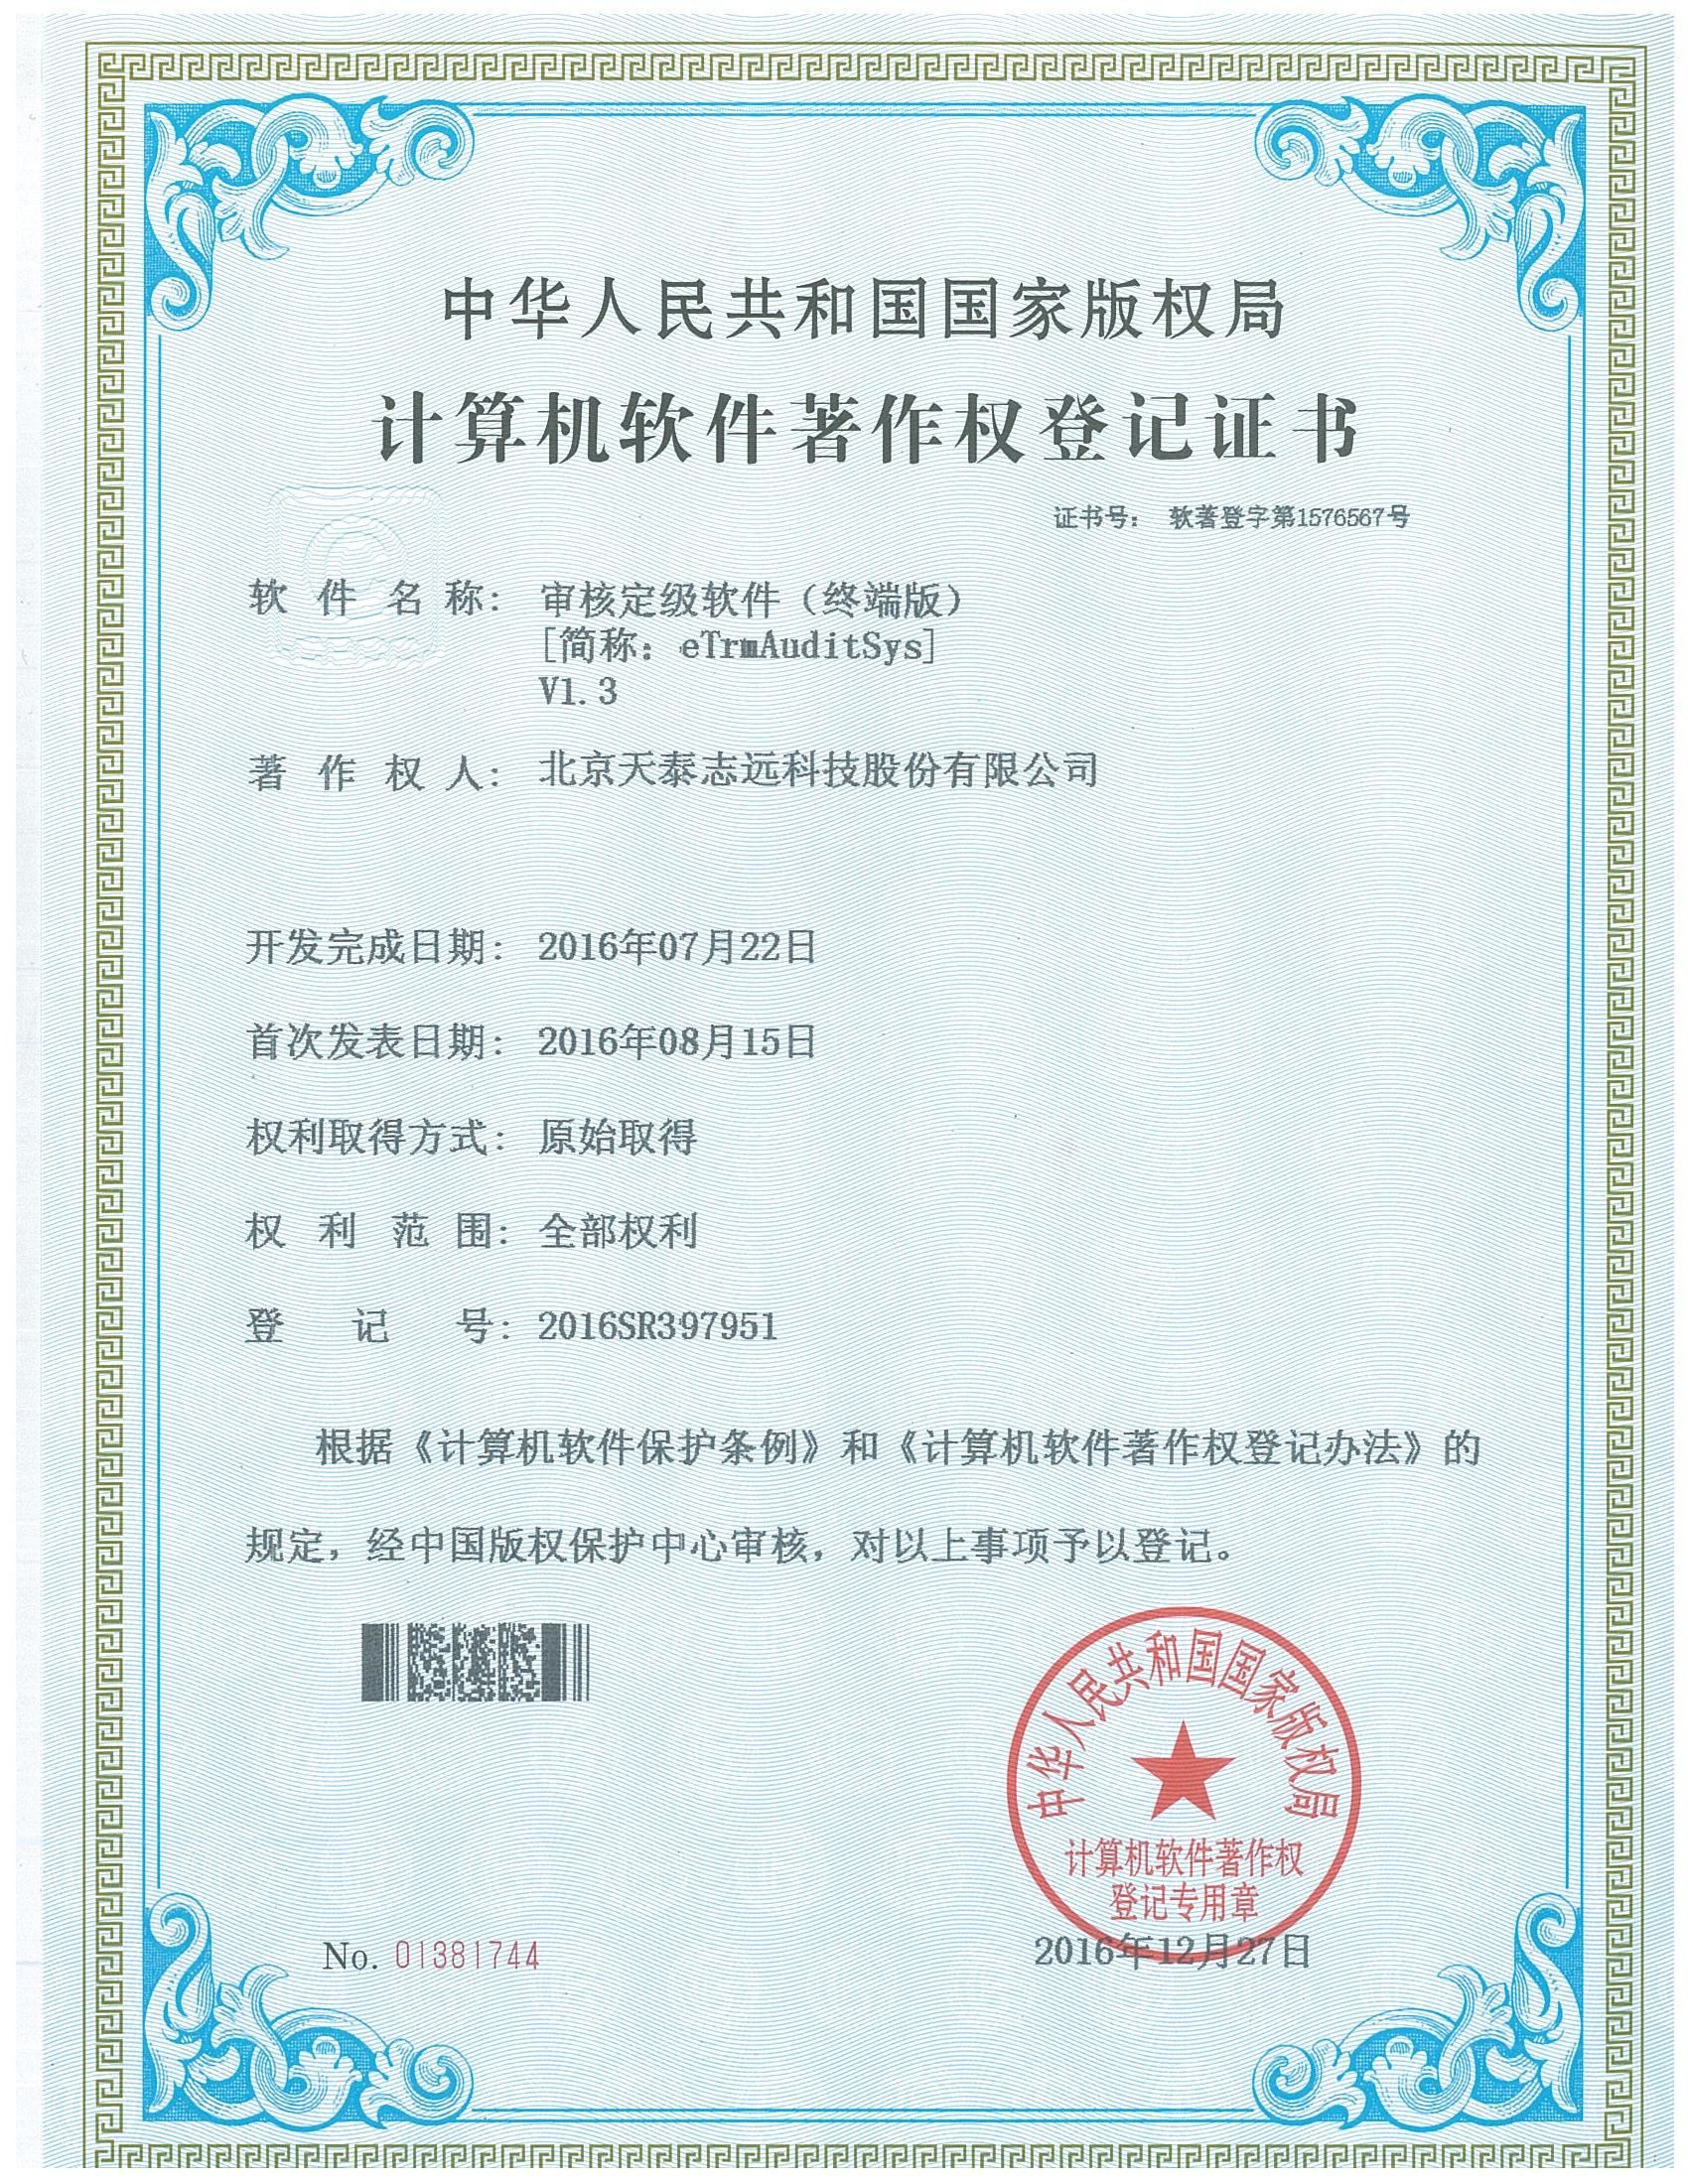 天泰志远：审核定级软件（终端版）著作权登记证书